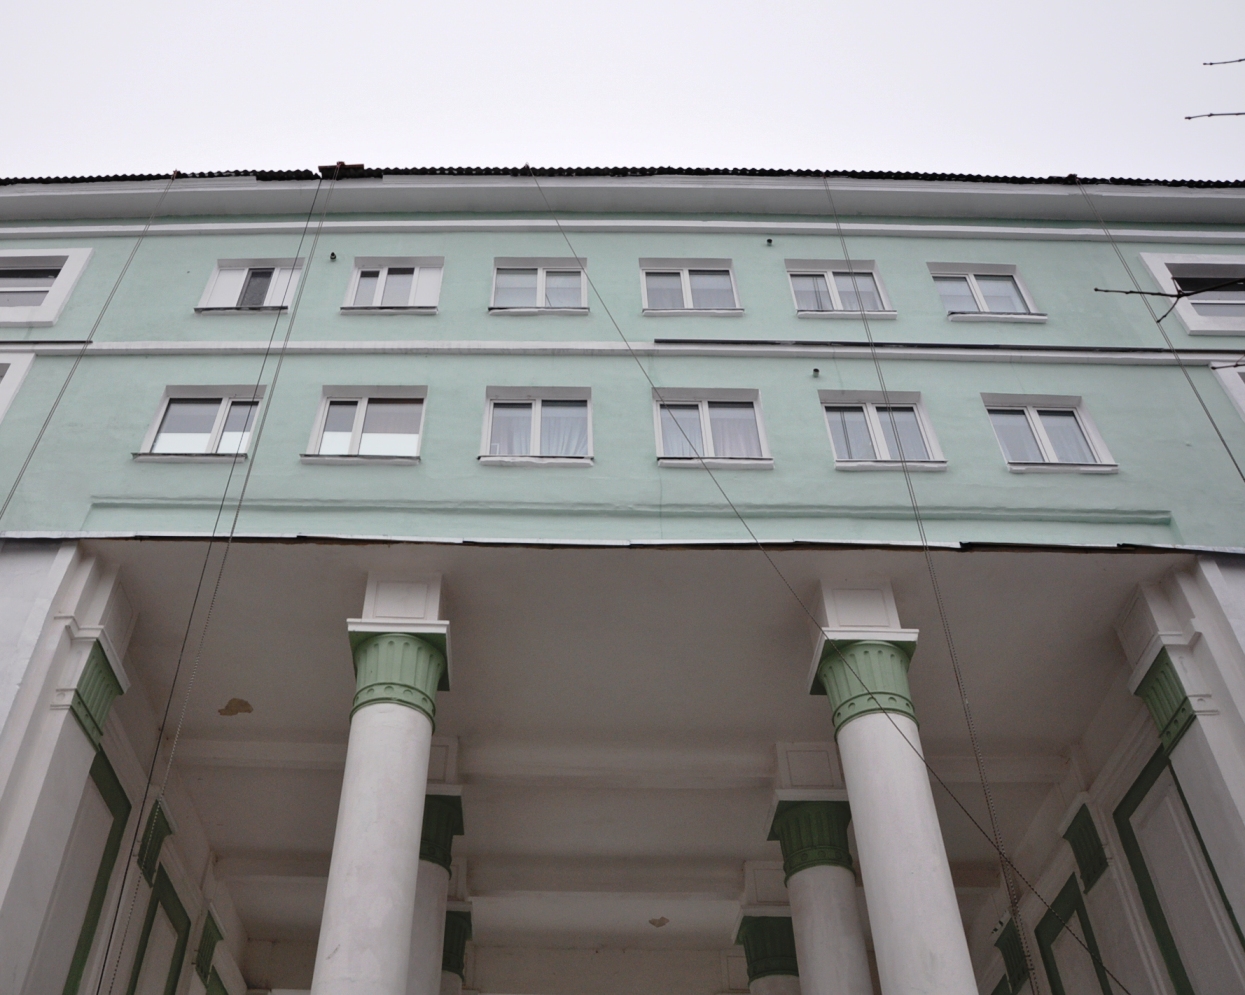 Отремонтированный фасад и крышав городе Новомосковске на улице Кирова  дом 2-14.